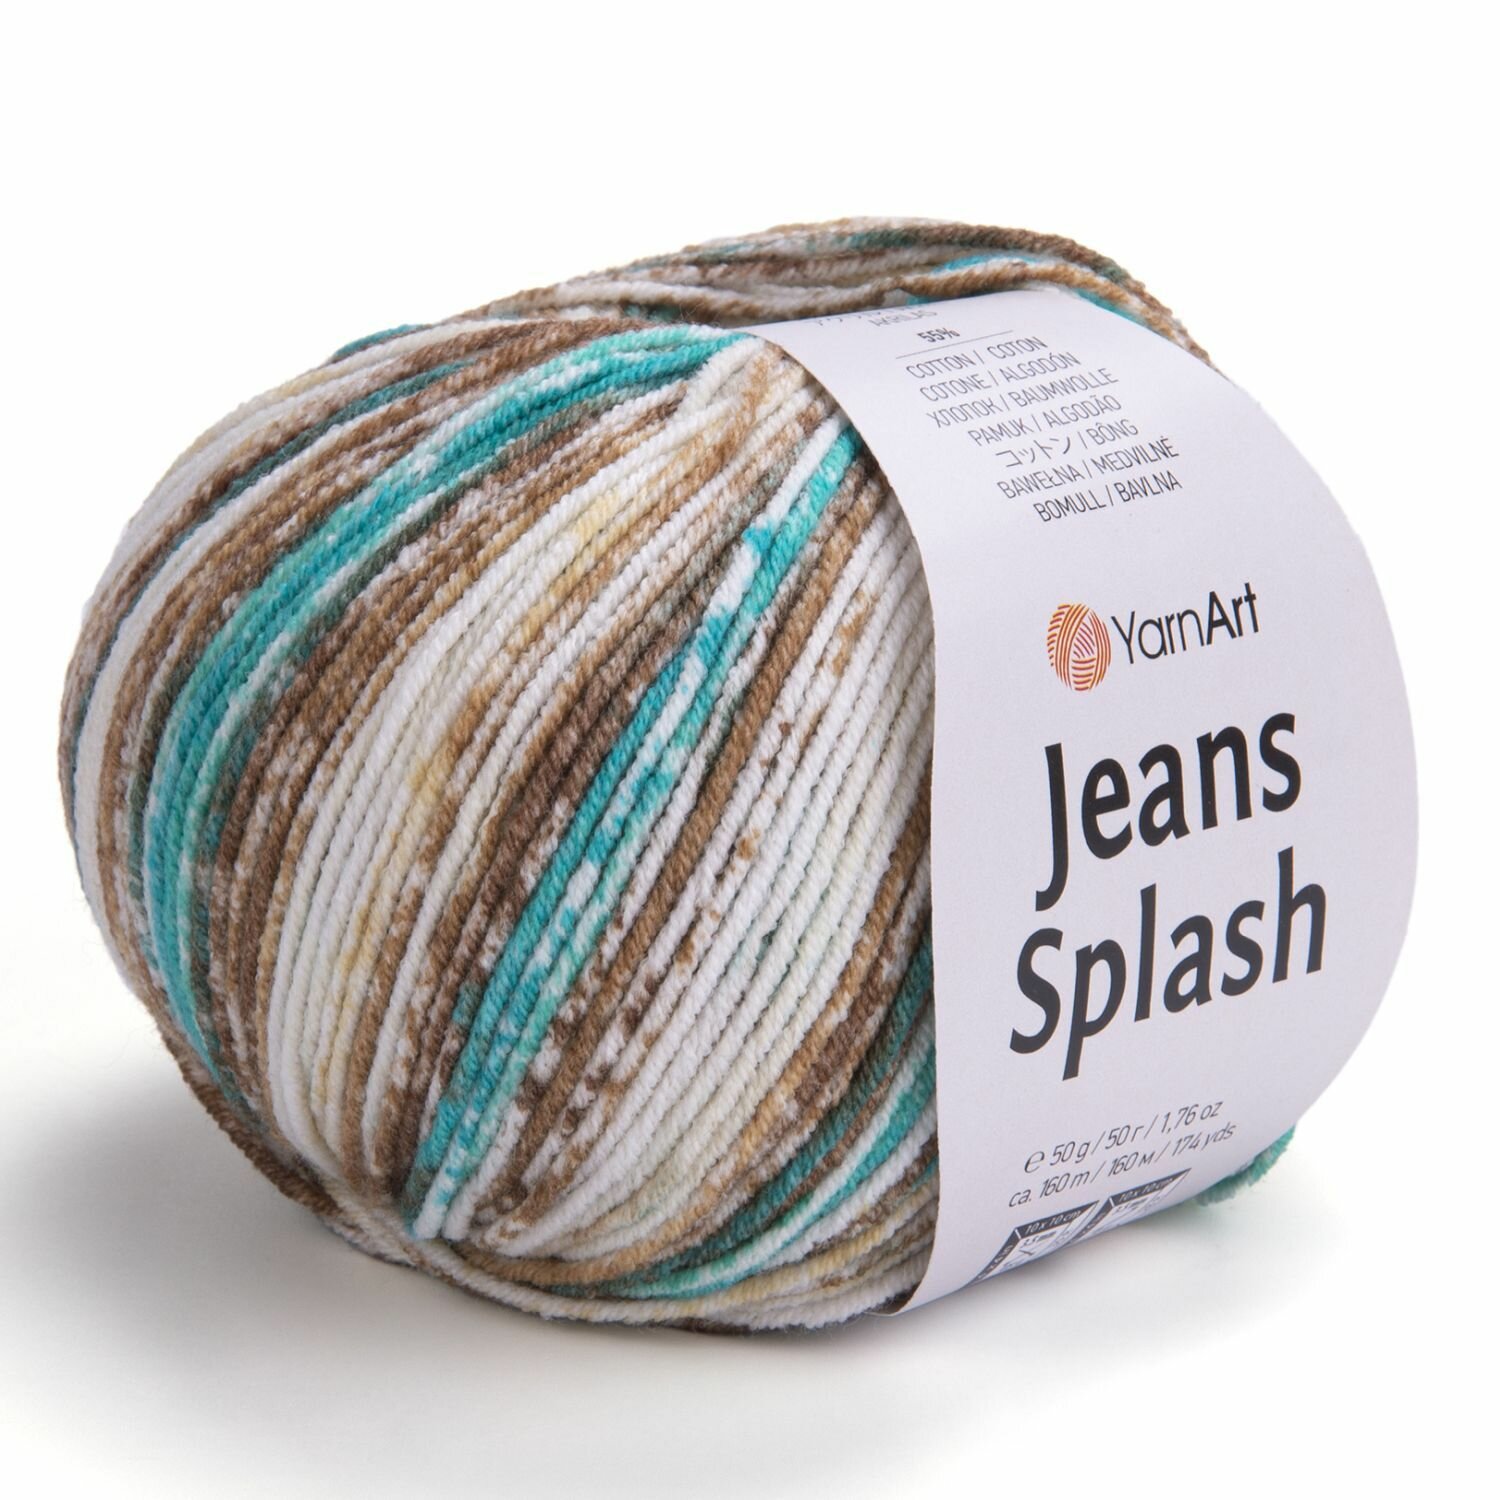 Пряжа Jeans Splash, YarnArt, бел/кофе/бир - 951, 55% хлопок, 45% акрил, 5 мотков, 50 г, 160 м.